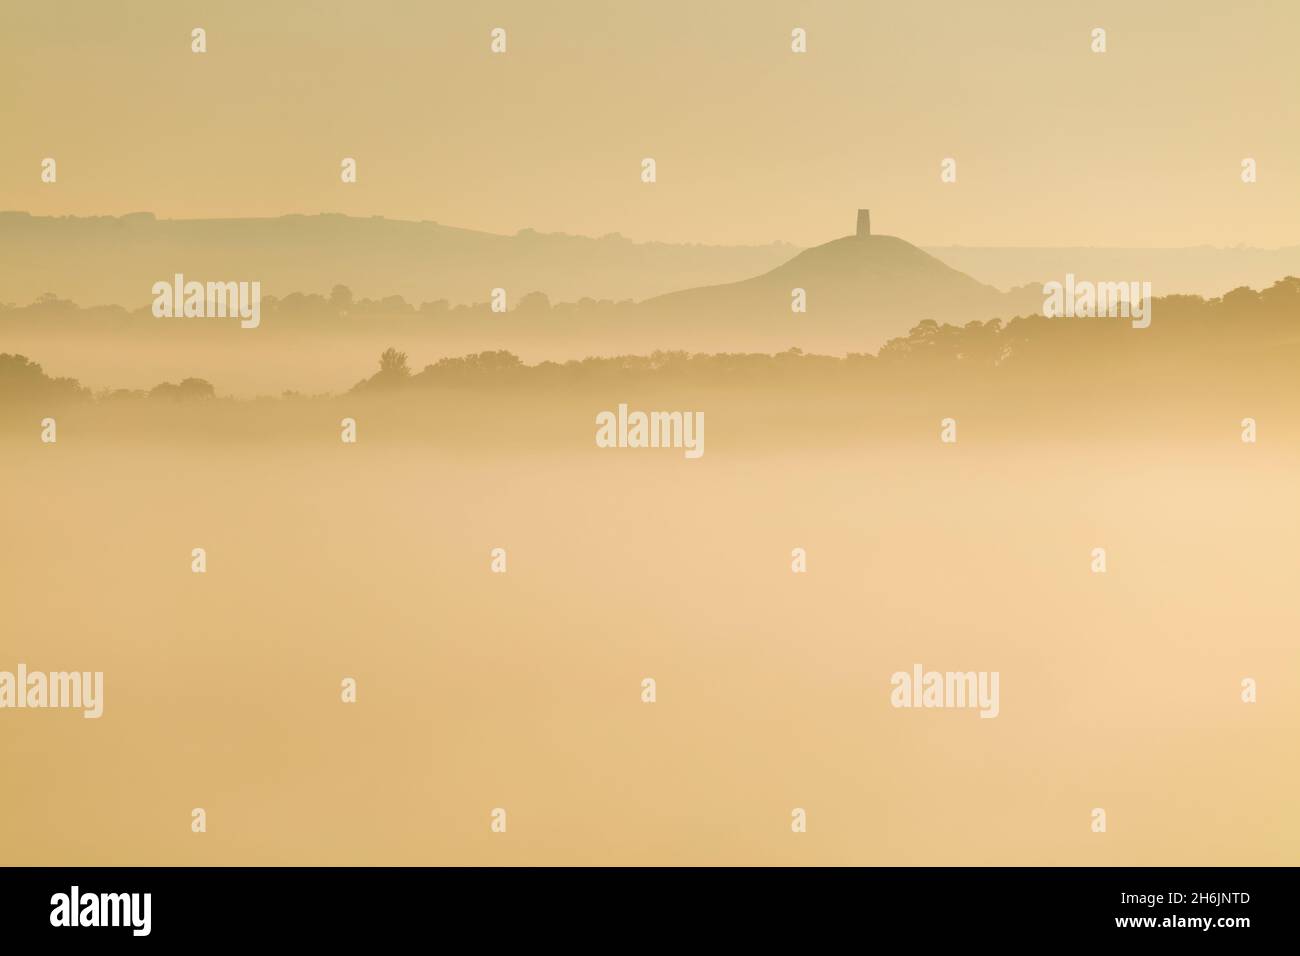 Glastonbury Tor et les collines environnantes s'élevant au-dessus de la brume matinale, Glastonbury, Somerset, Angleterre, Royaume-Uni,Europe Banque D'Images